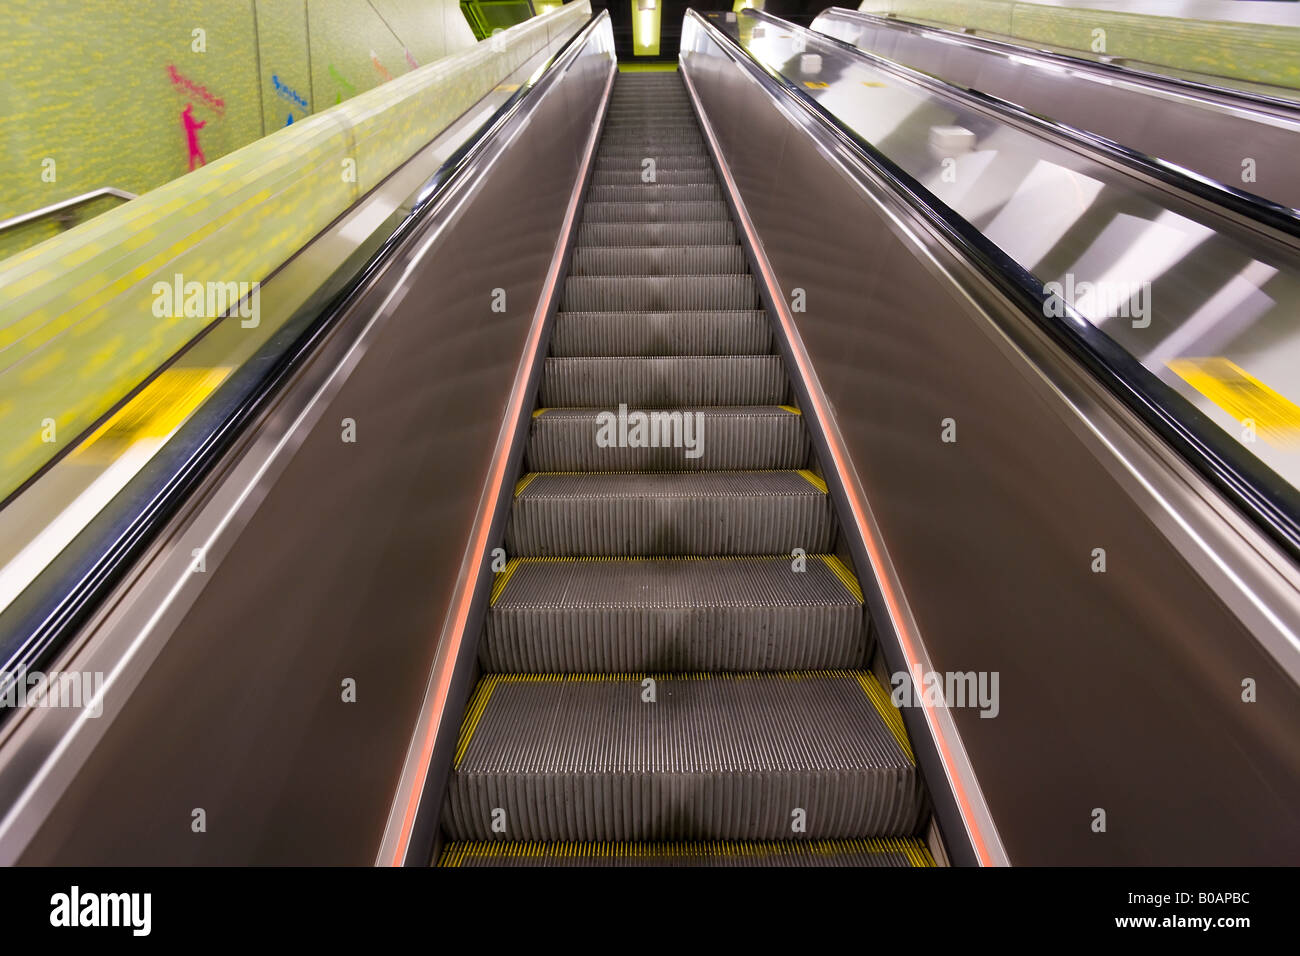 L'Asie, Chine, Hong Kong, MTR escalator, la station de métro métro souterrain Banque D'Images